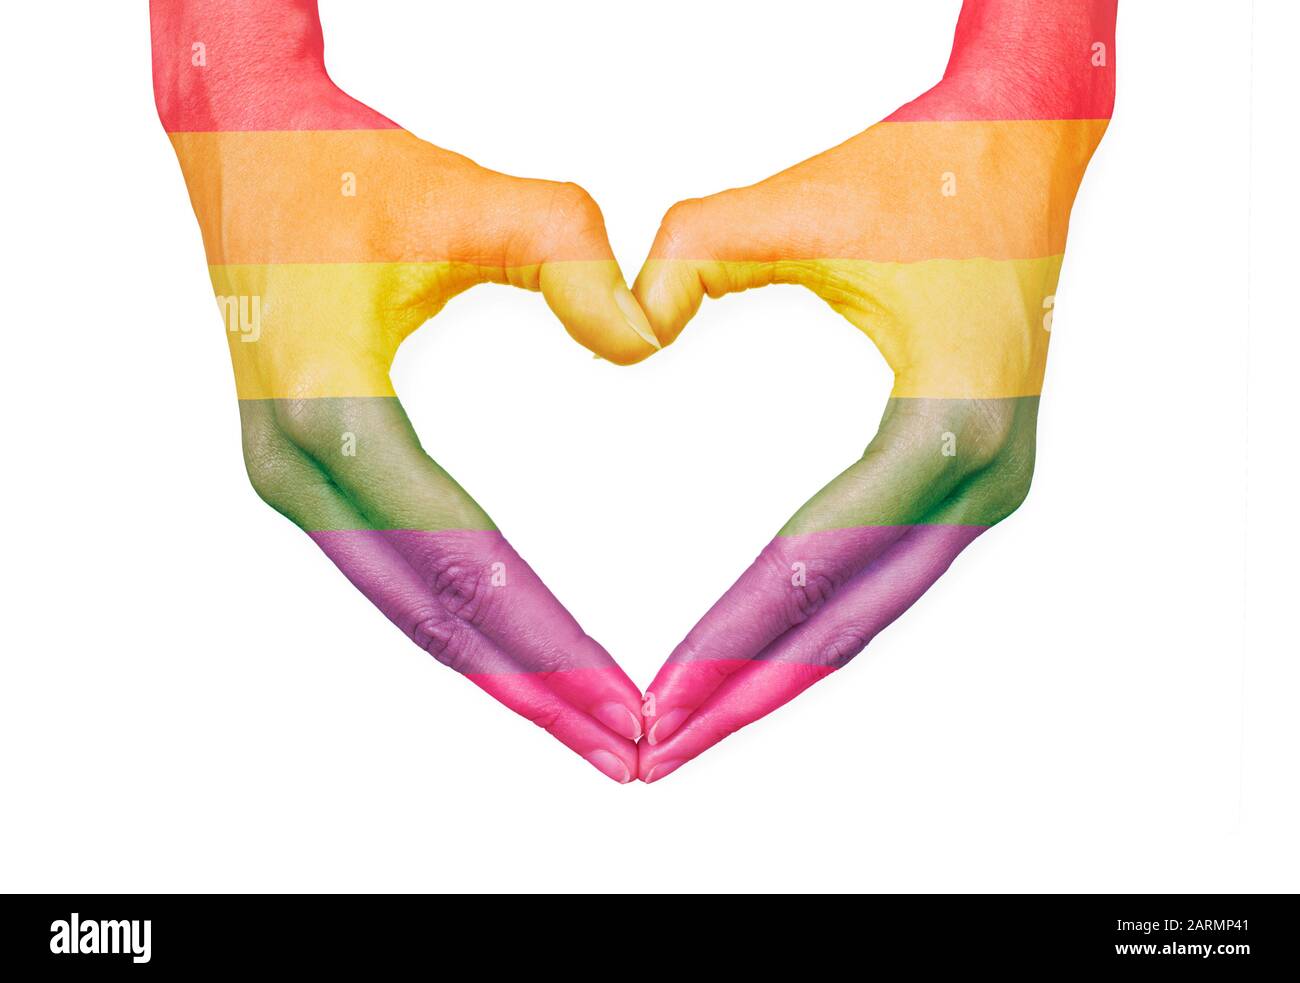 Les mains féminines qui font un coeur avec le drapeau LGBTQ+ raindow, peuvent représenter: La santé, l'amour, les soins, l'égalité ou la beauté Banque D'Images